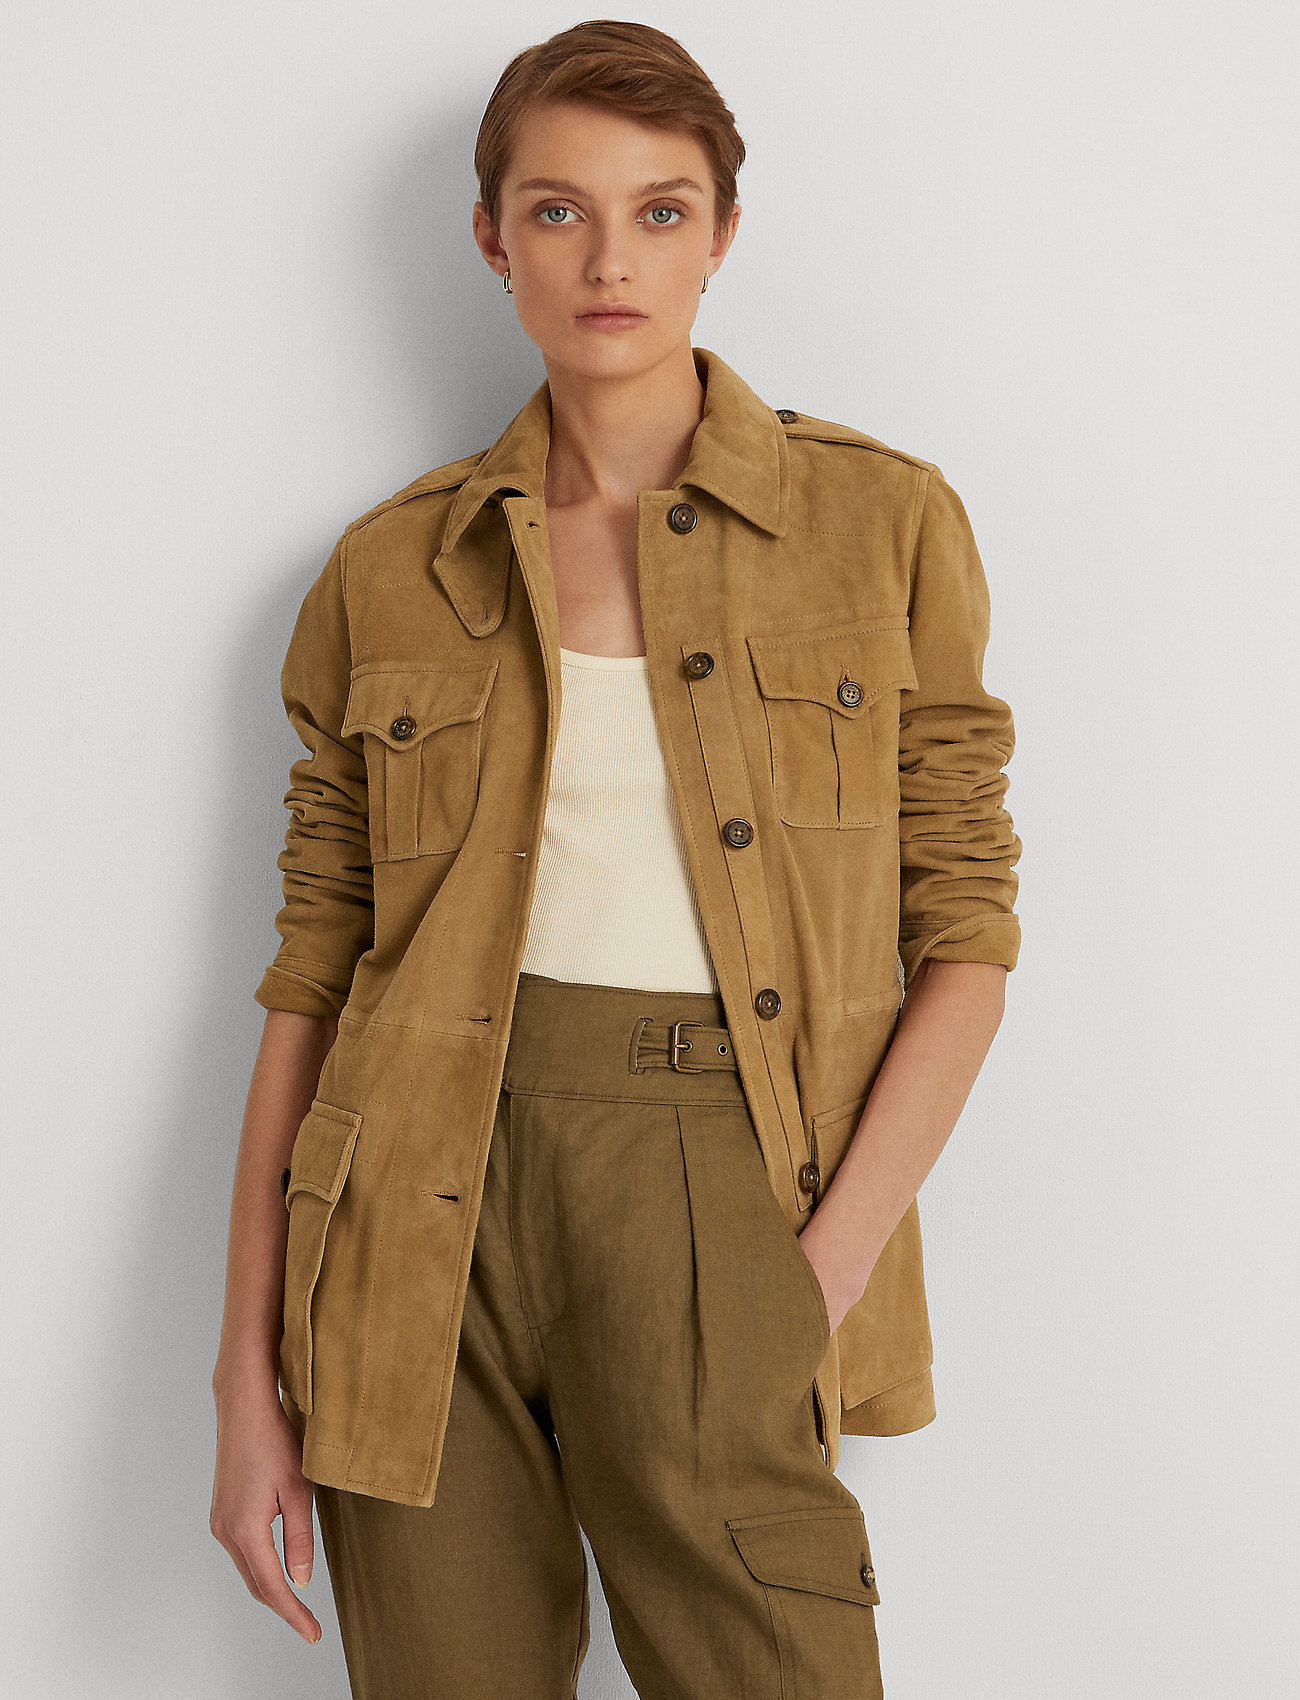 Lauren Ralph Lauren Suede Field Jacket  €. Buy Utility jackets from Lauren  Ralph Lauren online at . Fast delivery and easy returns